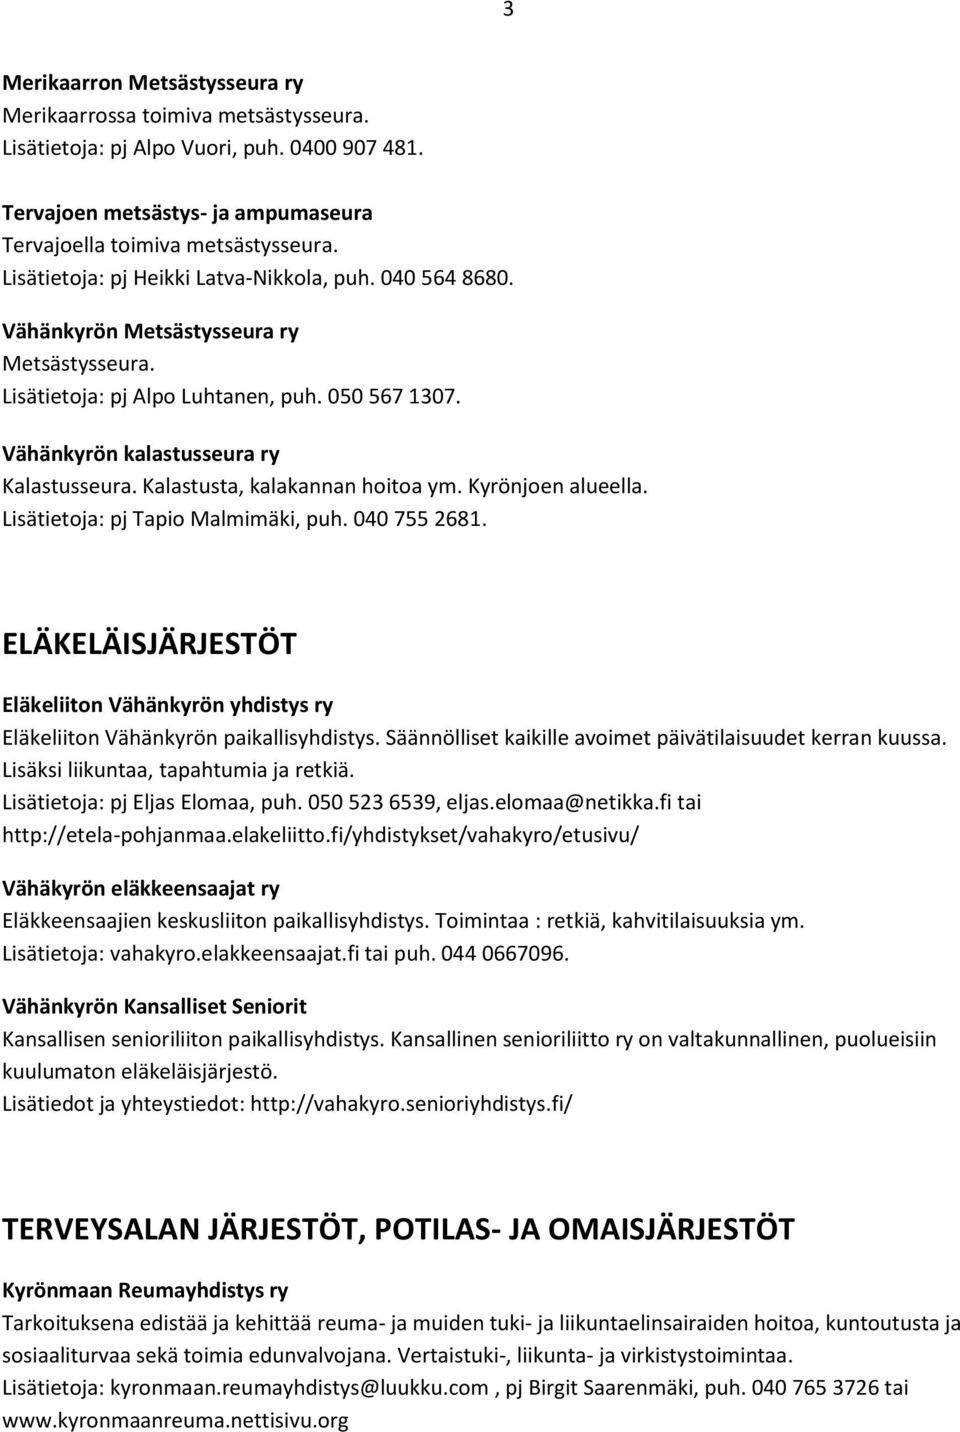 Kalastusta, kalakannan hoitoa ym. Kyrönjoen alueella. Lisätietoja: pj Tapio Malmimäki, puh. 040 755 2681.